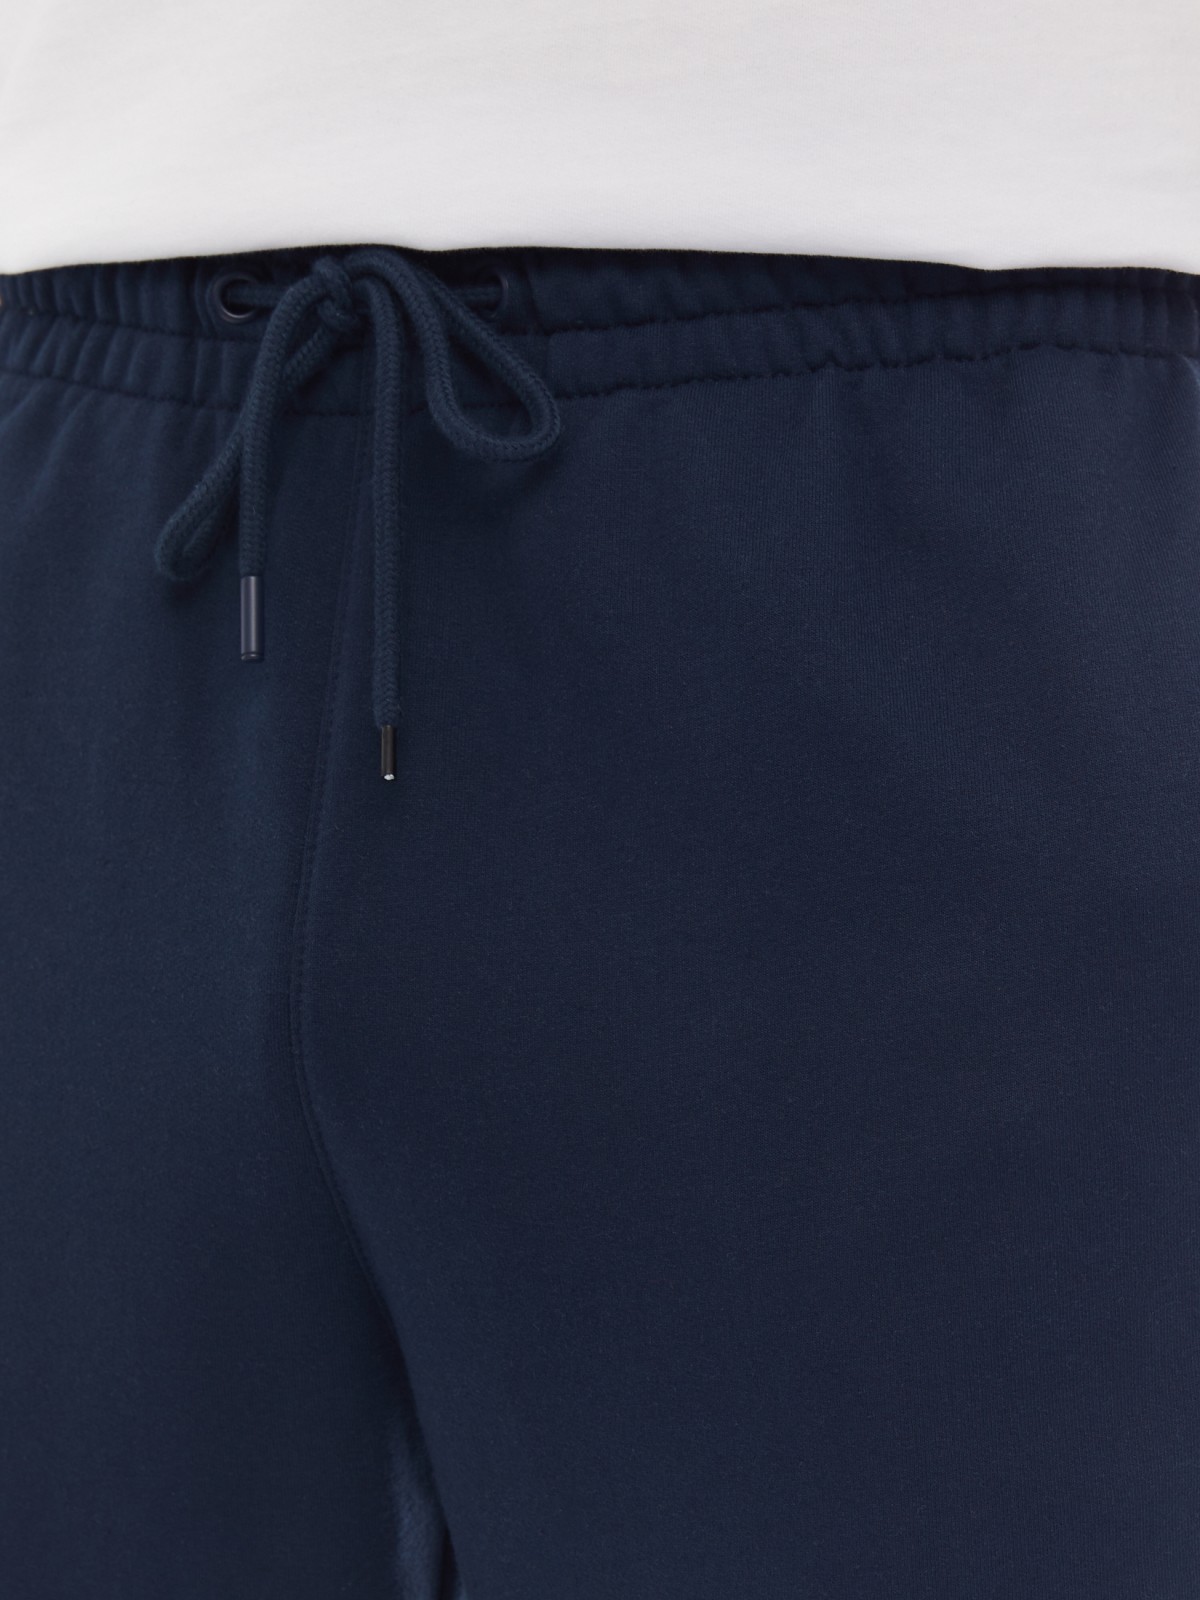 Трикотажные брюки-джоггеры в спортивном стиле zolla 014137660042, цвет синий, размер S - фото 4